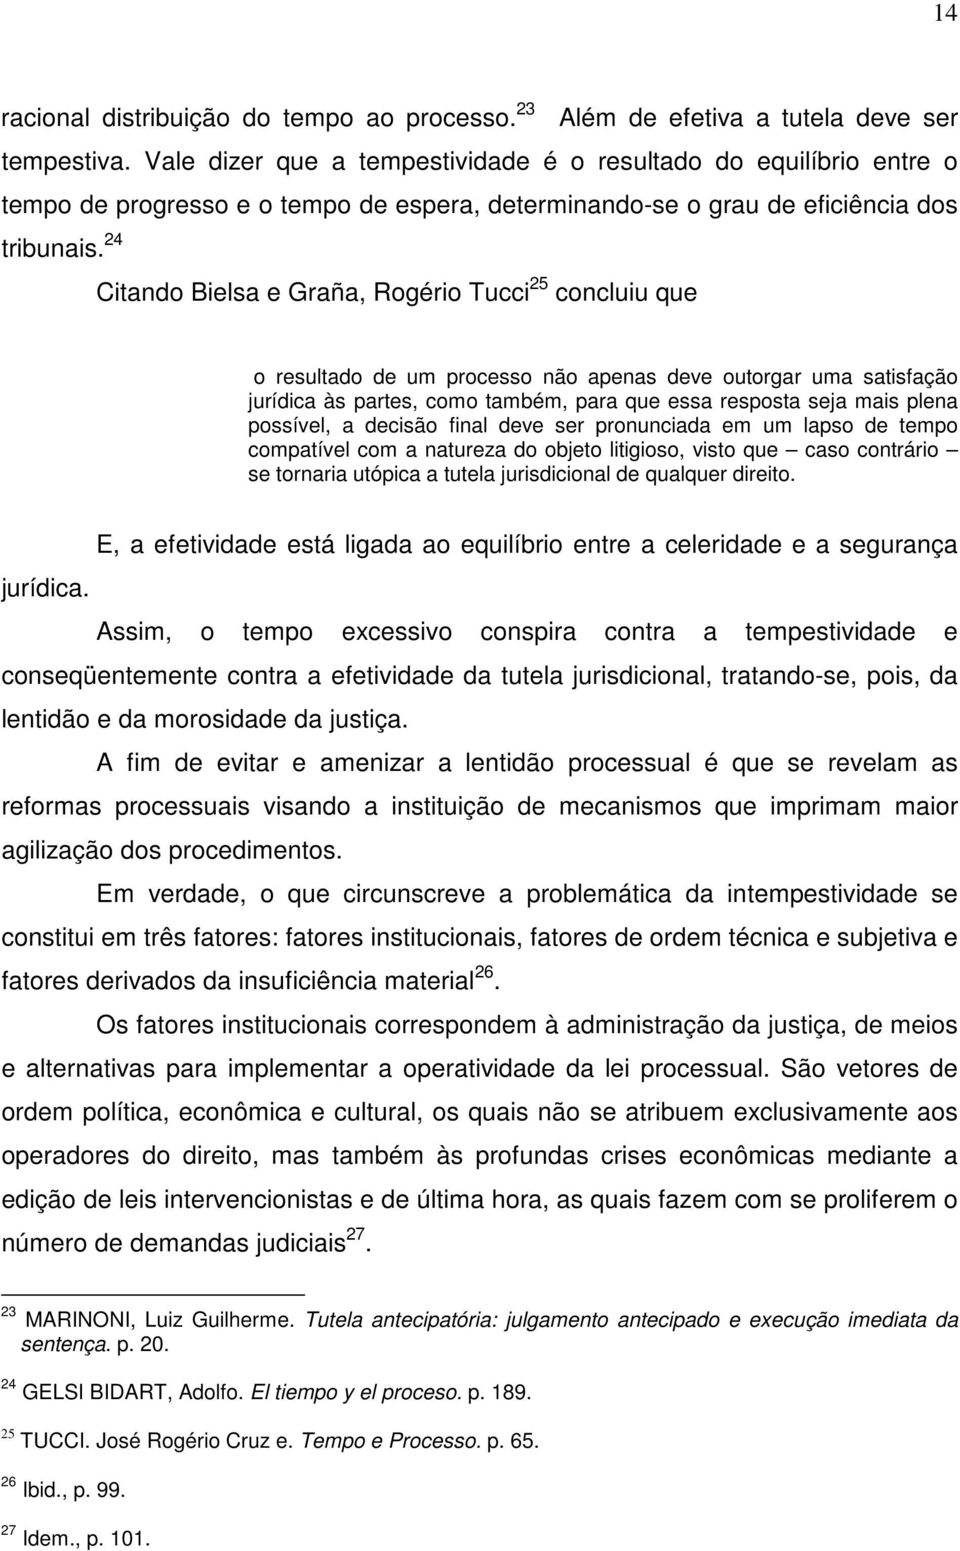 24 Citando Bielsa e Graña, Rogério Tucci 25 concluiu que o resultado de um processo não apenas deve outorgar uma satisfação jurídica às partes, como também, para que essa resposta seja mais plena